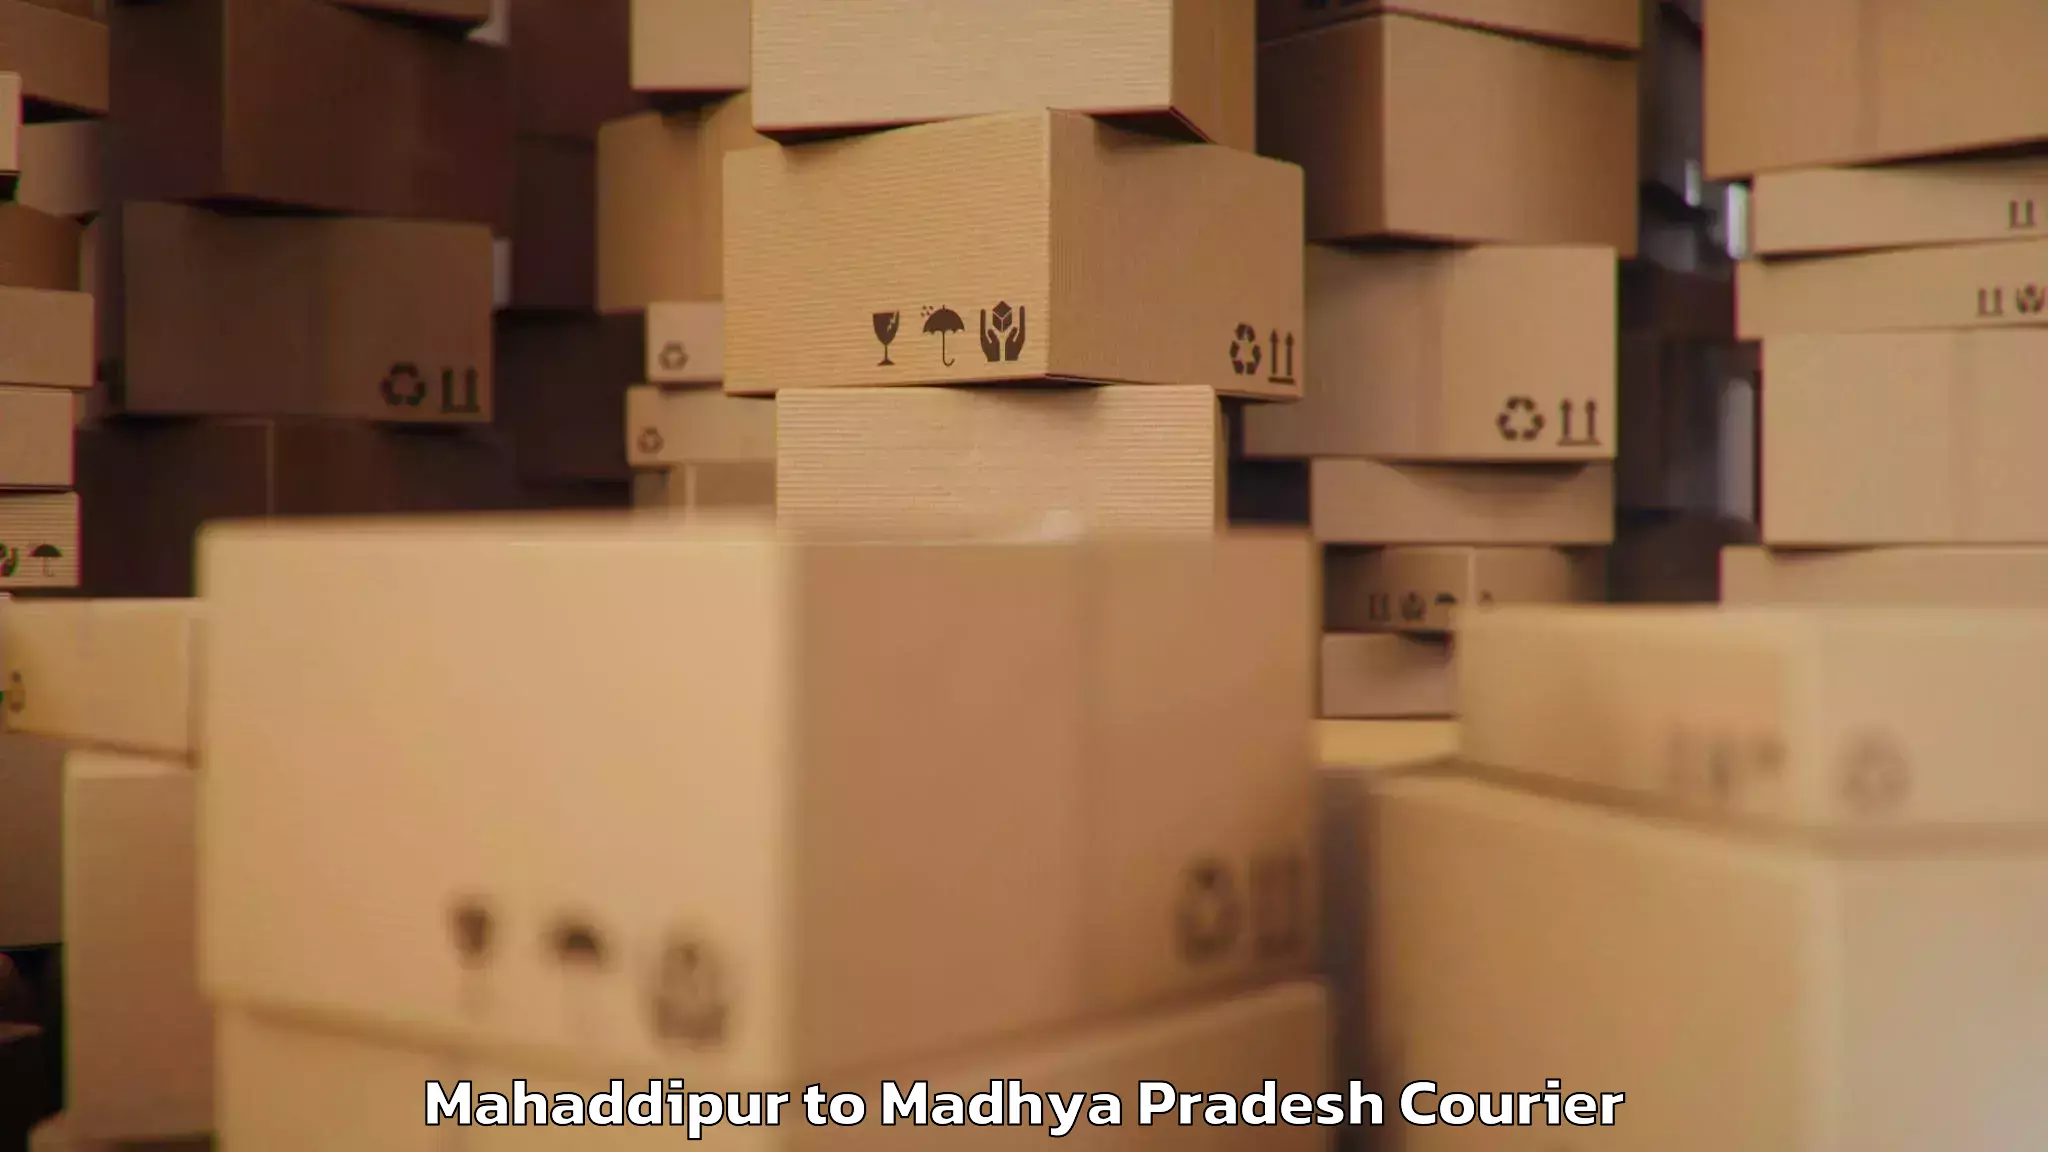 High-quality baggage shipment Mahaddipur to Garoth